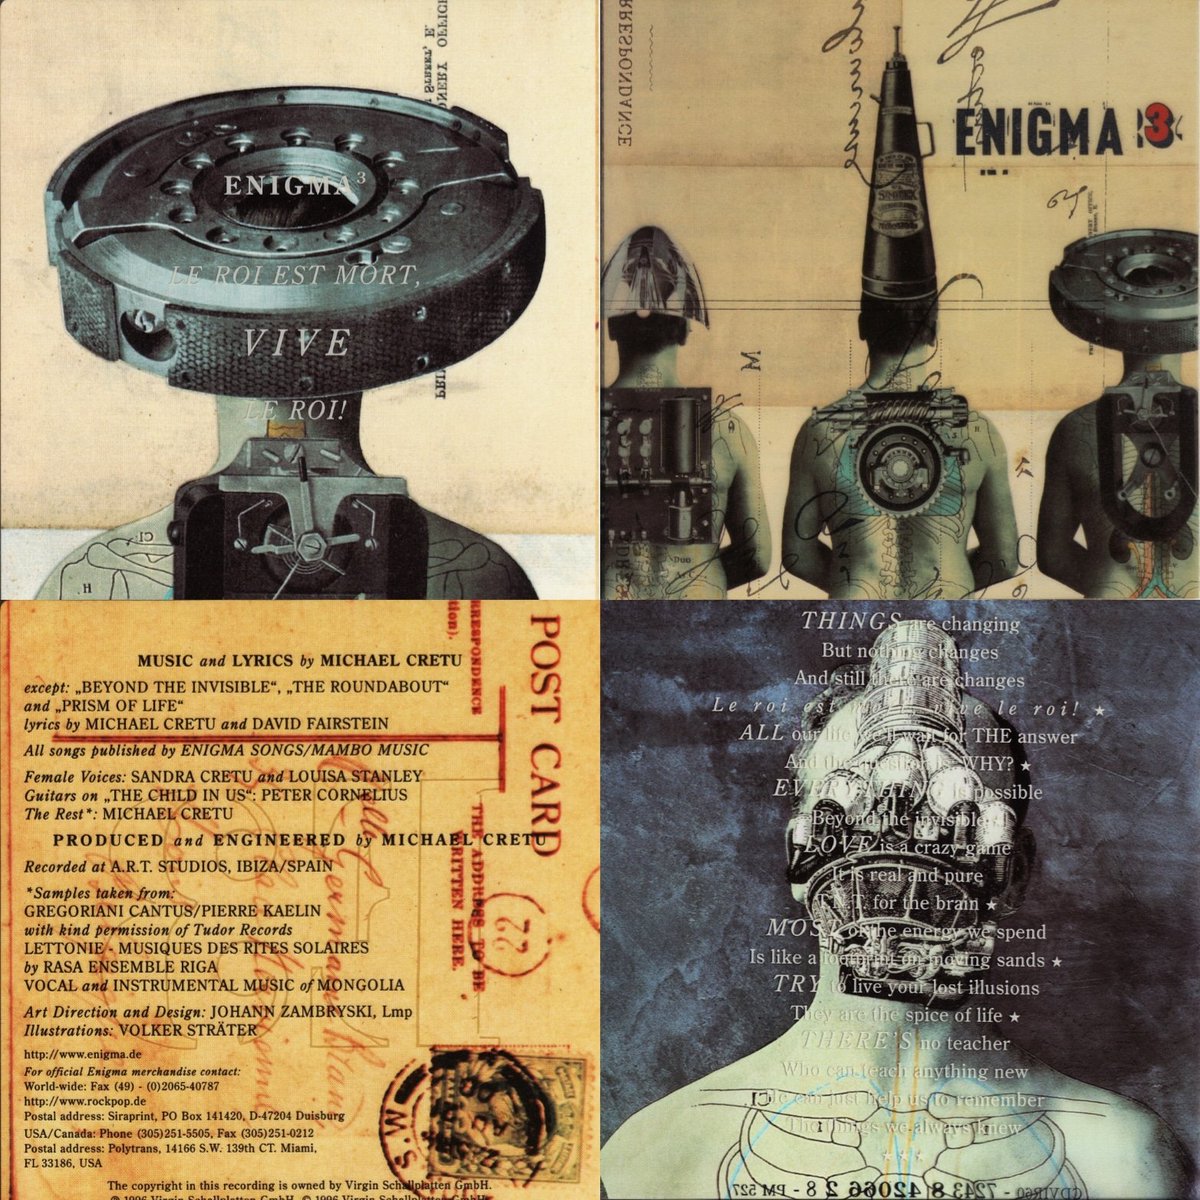 Le roi est mort. Enigma le roi est mort Vive le roi альбом. Enigma 1996 le roi est mort Vive le roi обложка альбома. Enigma 3. Enigma обложка.